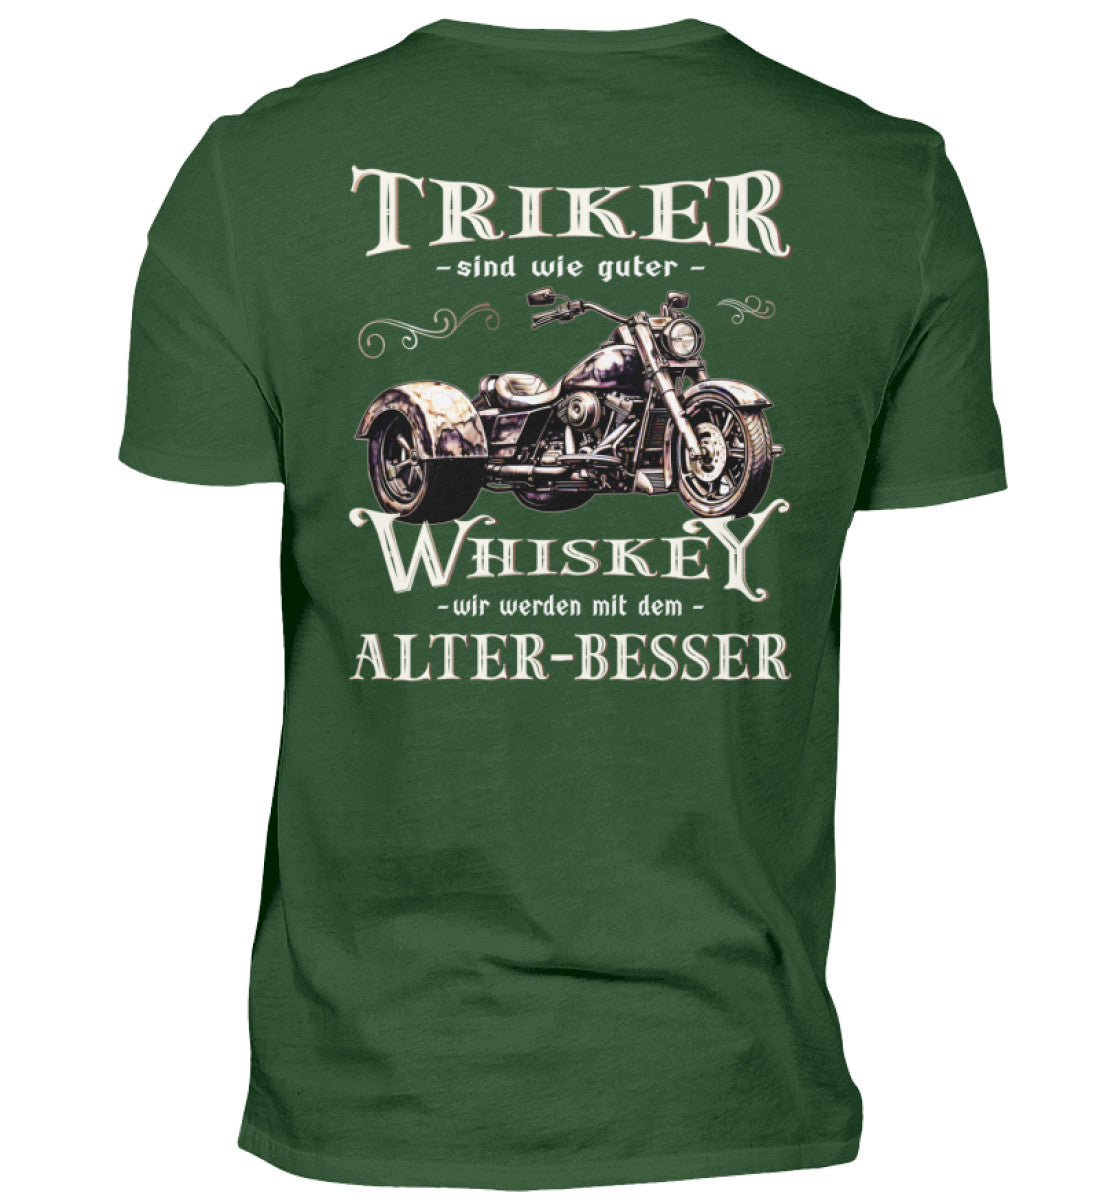 Ein T-Shirt für Trike Fahrer von Wingbikers mit dem Aufdruck, Triker sind wie guter Whiskey - Wir werden mit dem Alter besser, als Back Print, in dunkelgrün.